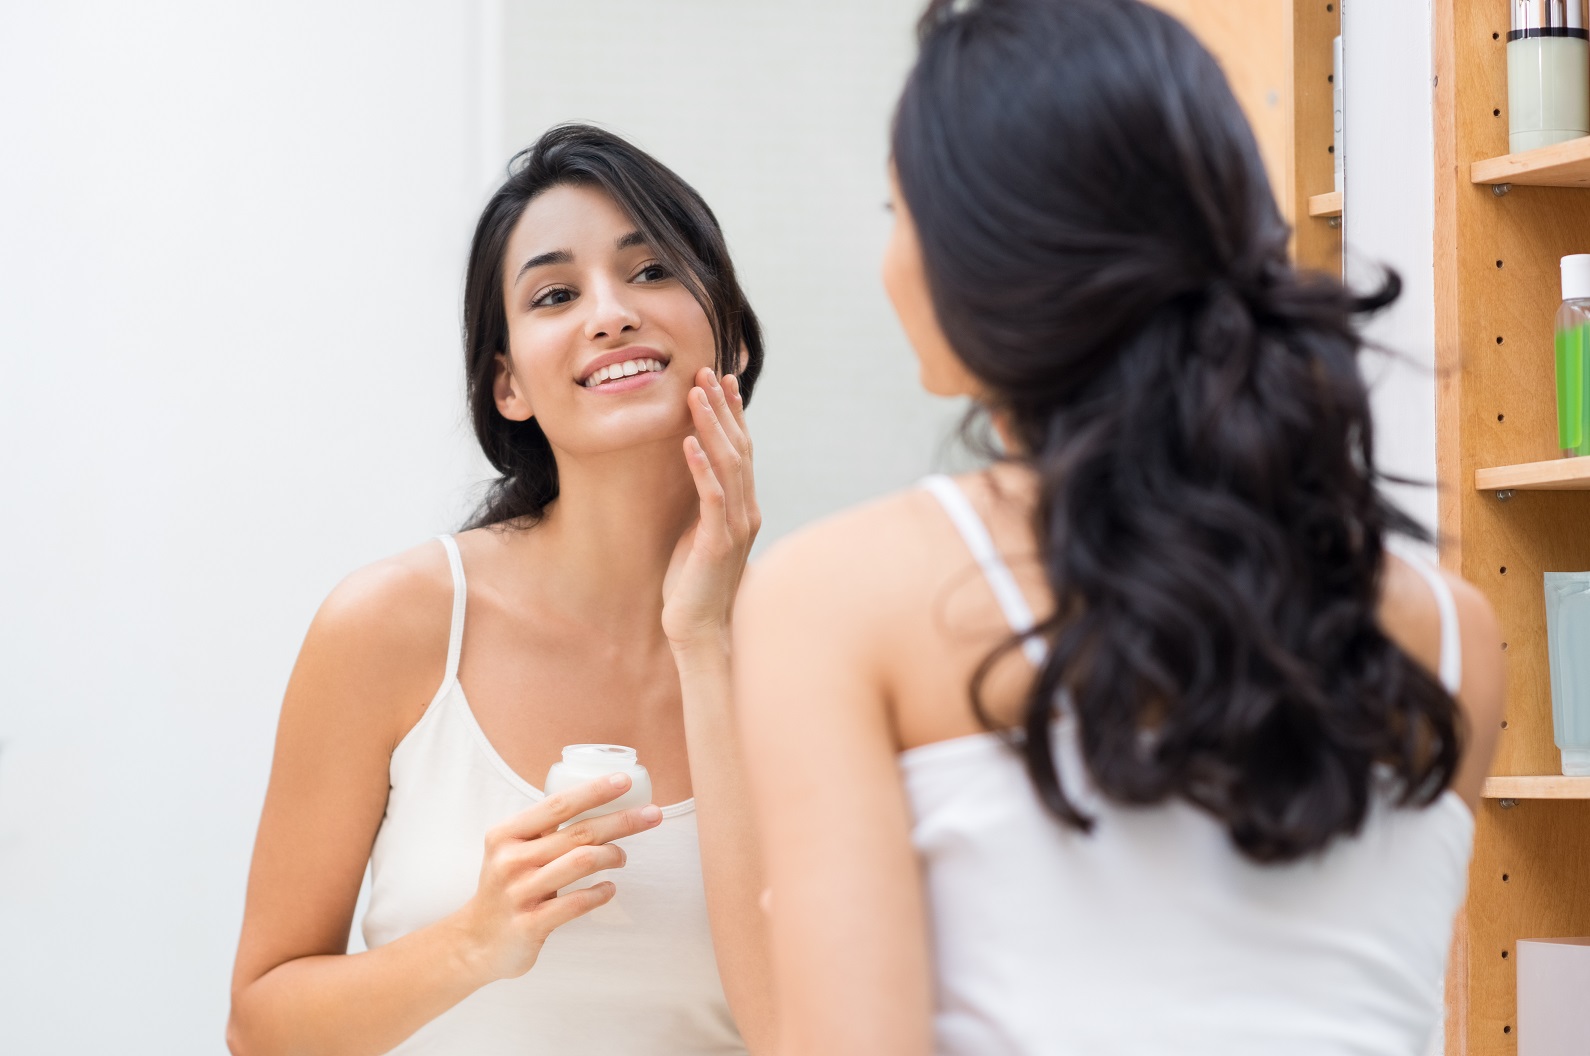 Skincare na quarentena: o uso excessivo de eletrônicos exige cuidados redobrados com a pele